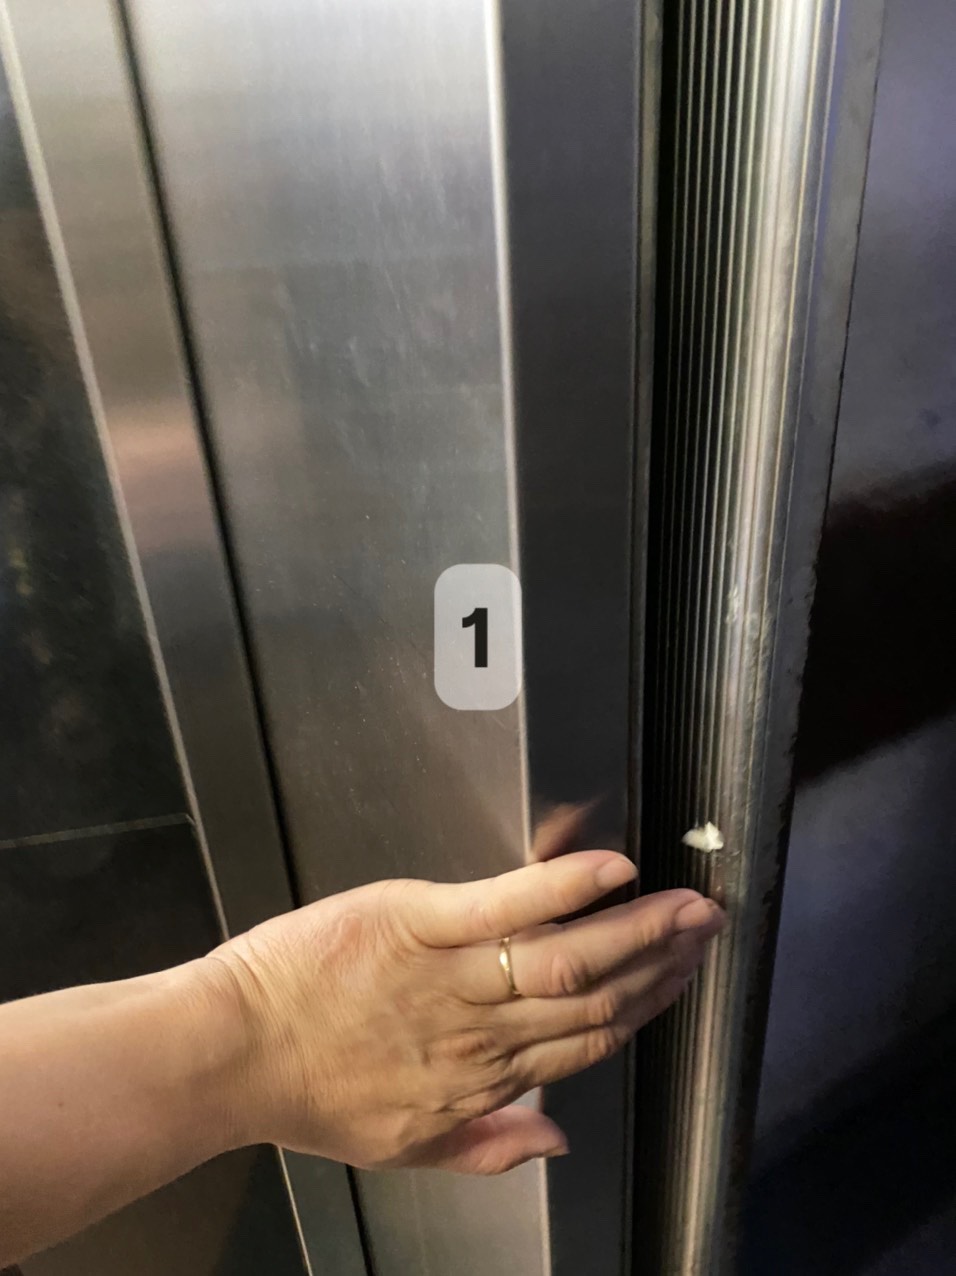 Chuyên gia giải mã tình huống bà bất lực cứu cháu kẹt trong thang máy ở Hà Nội - Ảnh 2